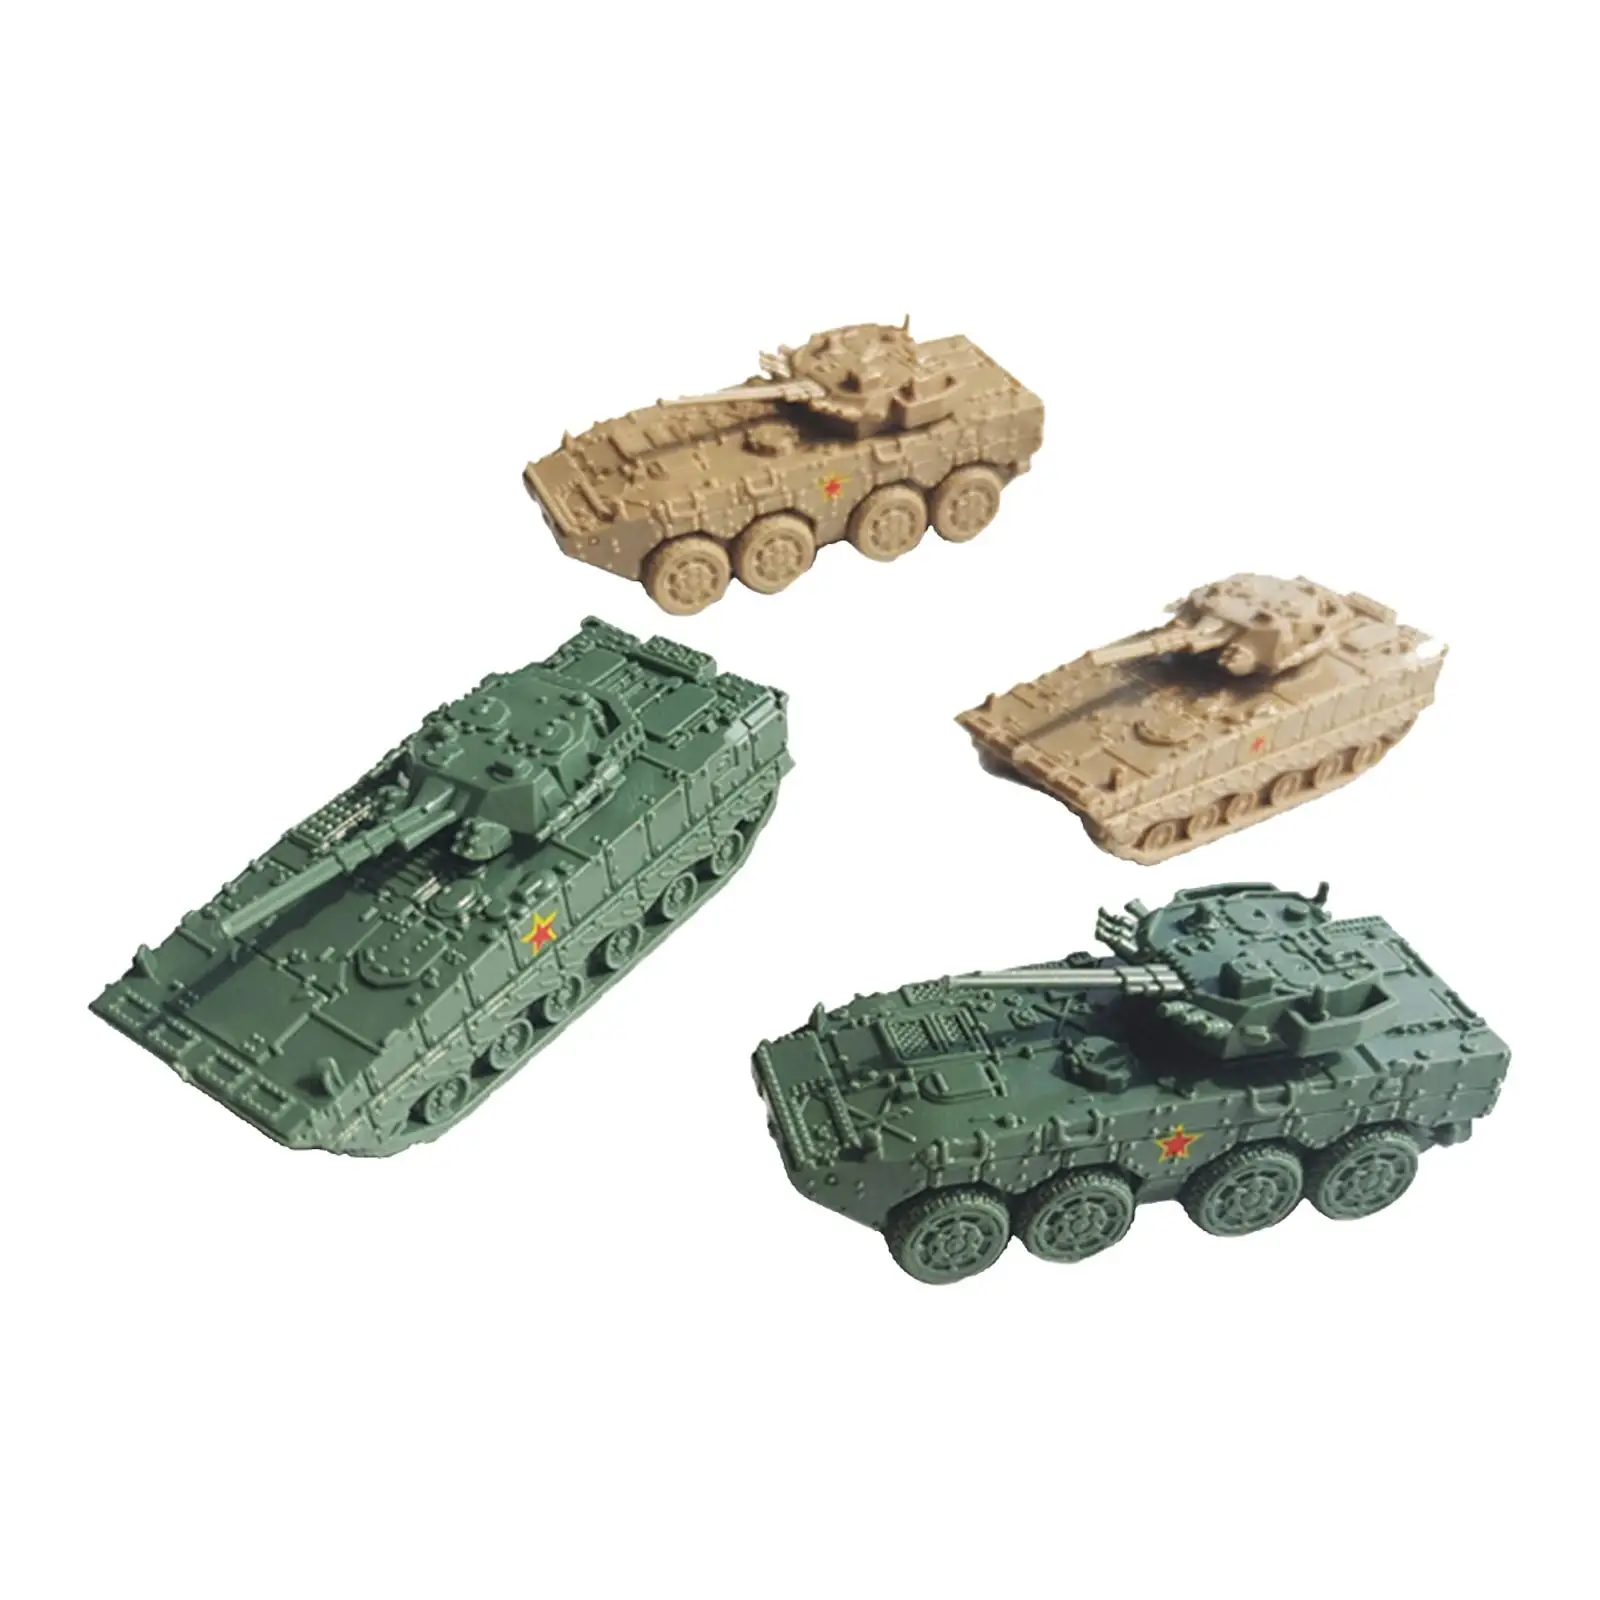 4 Adet 1: 144 Ölçekli Tankı Modeli Oyuncak Tankı Playset Koleksiyon 4D çocuk oyuncağı Zırhlı Araç eğitici oyuncak Çocuklar Çocuklar için Hediyeler